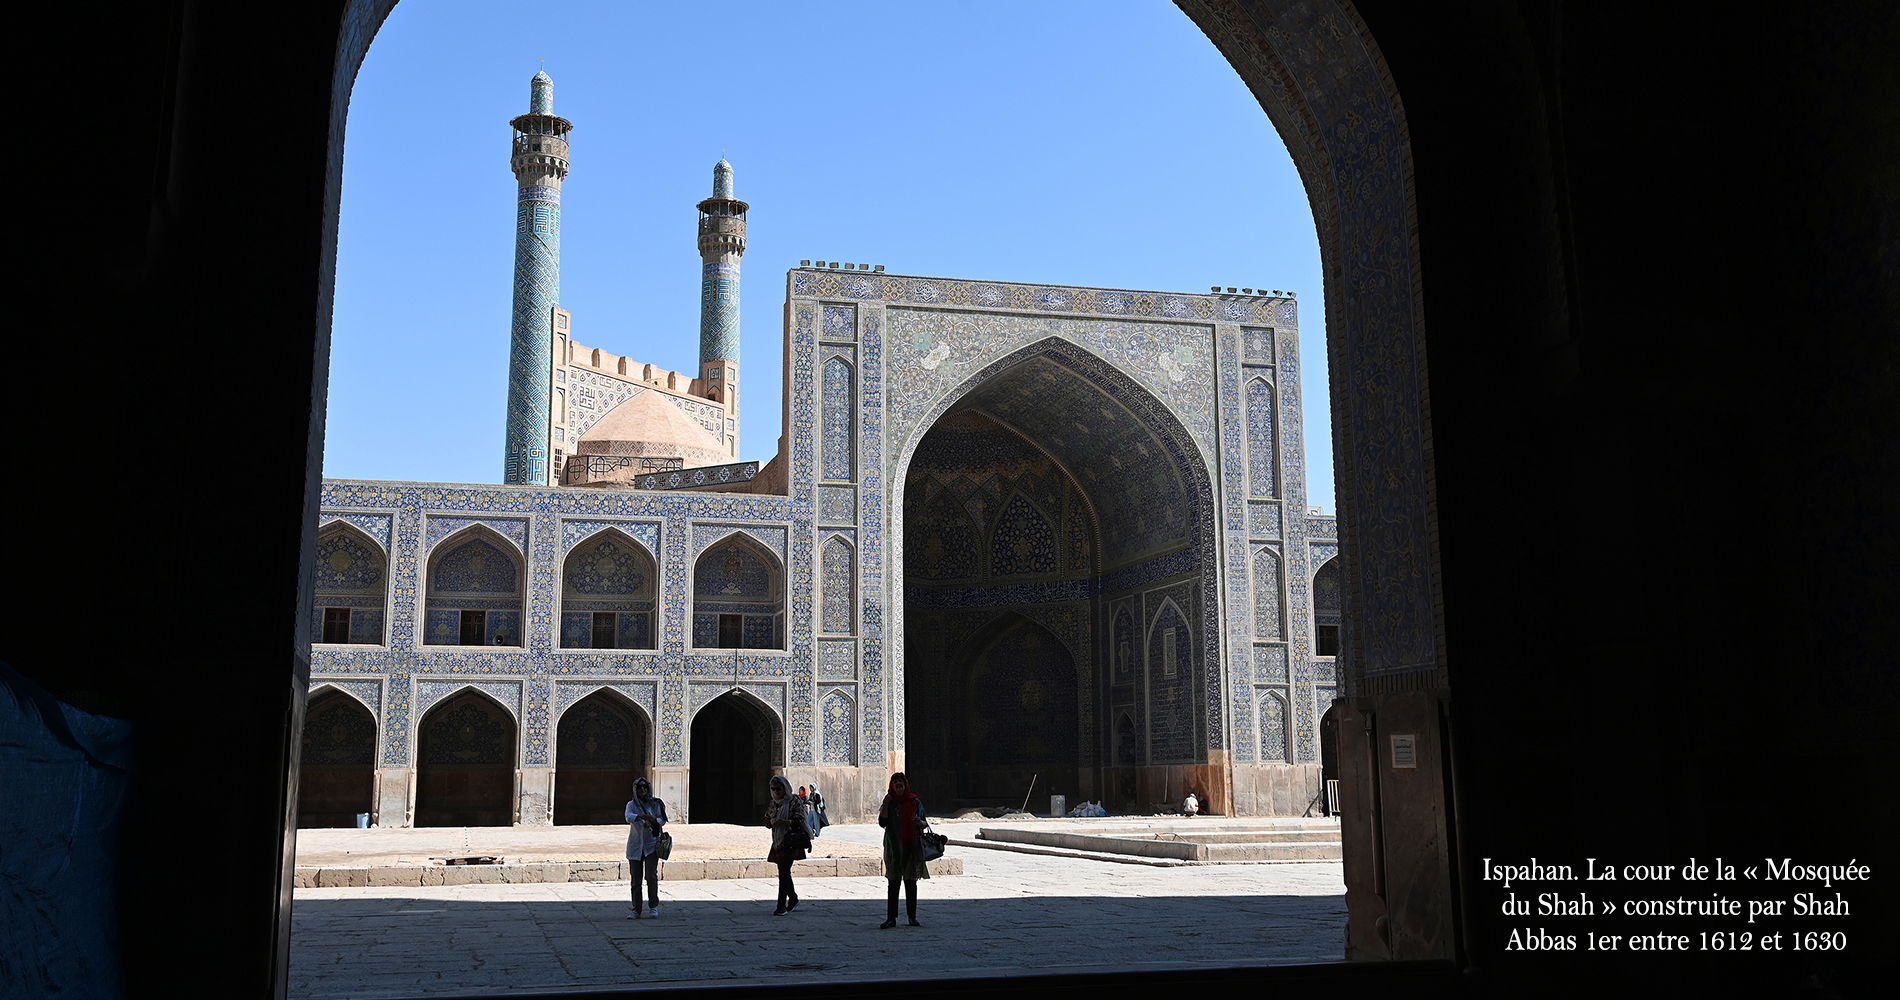 Mosquee du shah